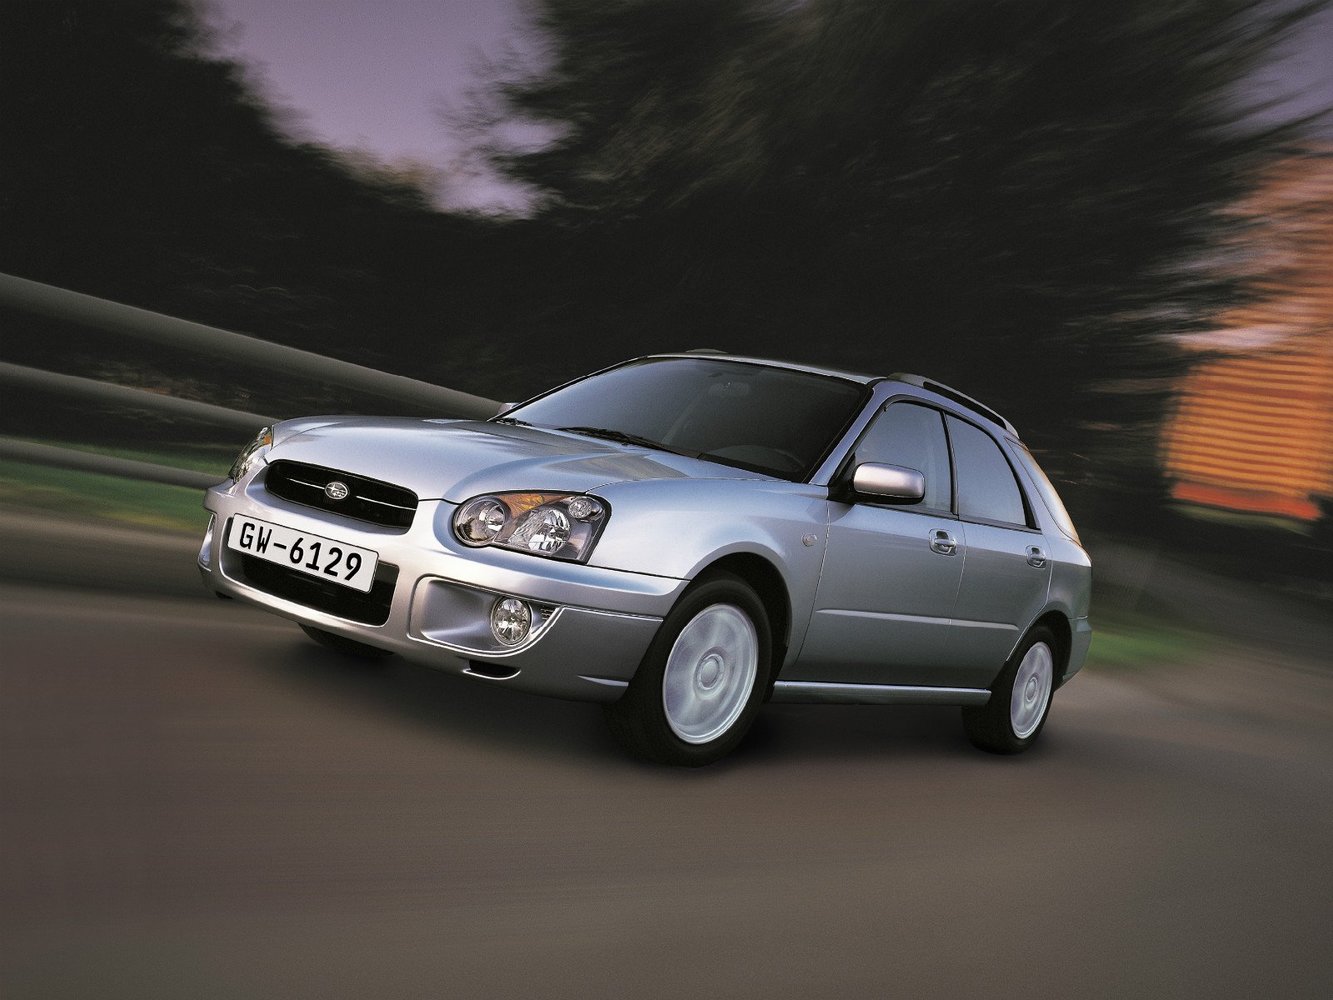 универсал Subaru Impreza 2002 - 2005г выпуска модификация 1.5 AT (100 л.с.)